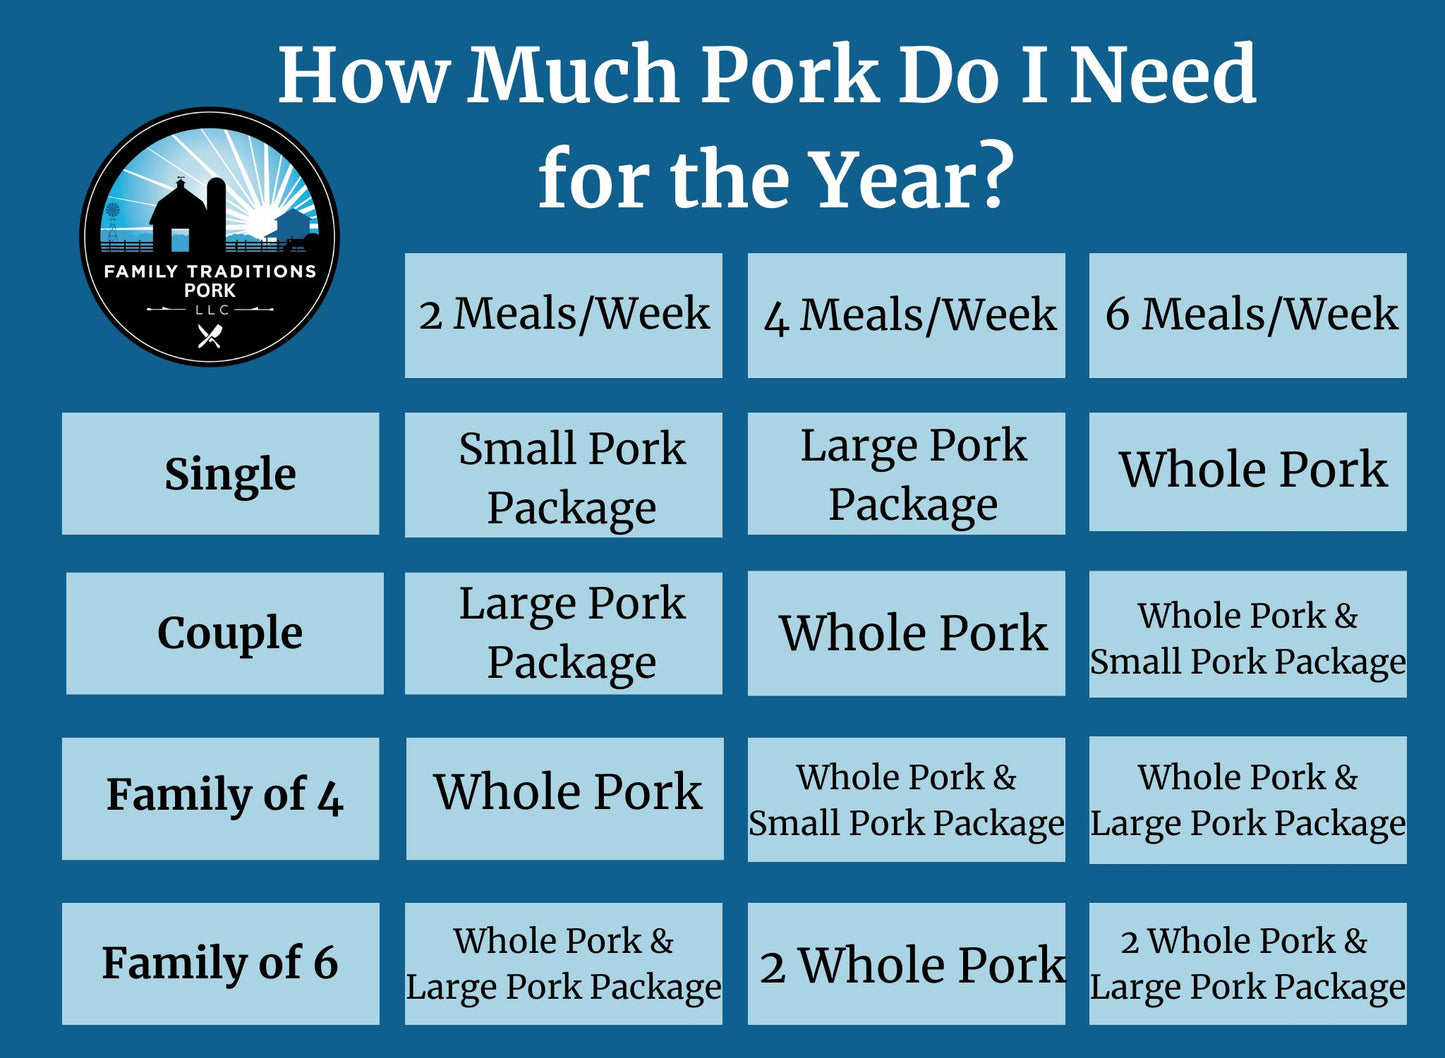 Small Pork Package DEPOSIT: 45 lbs